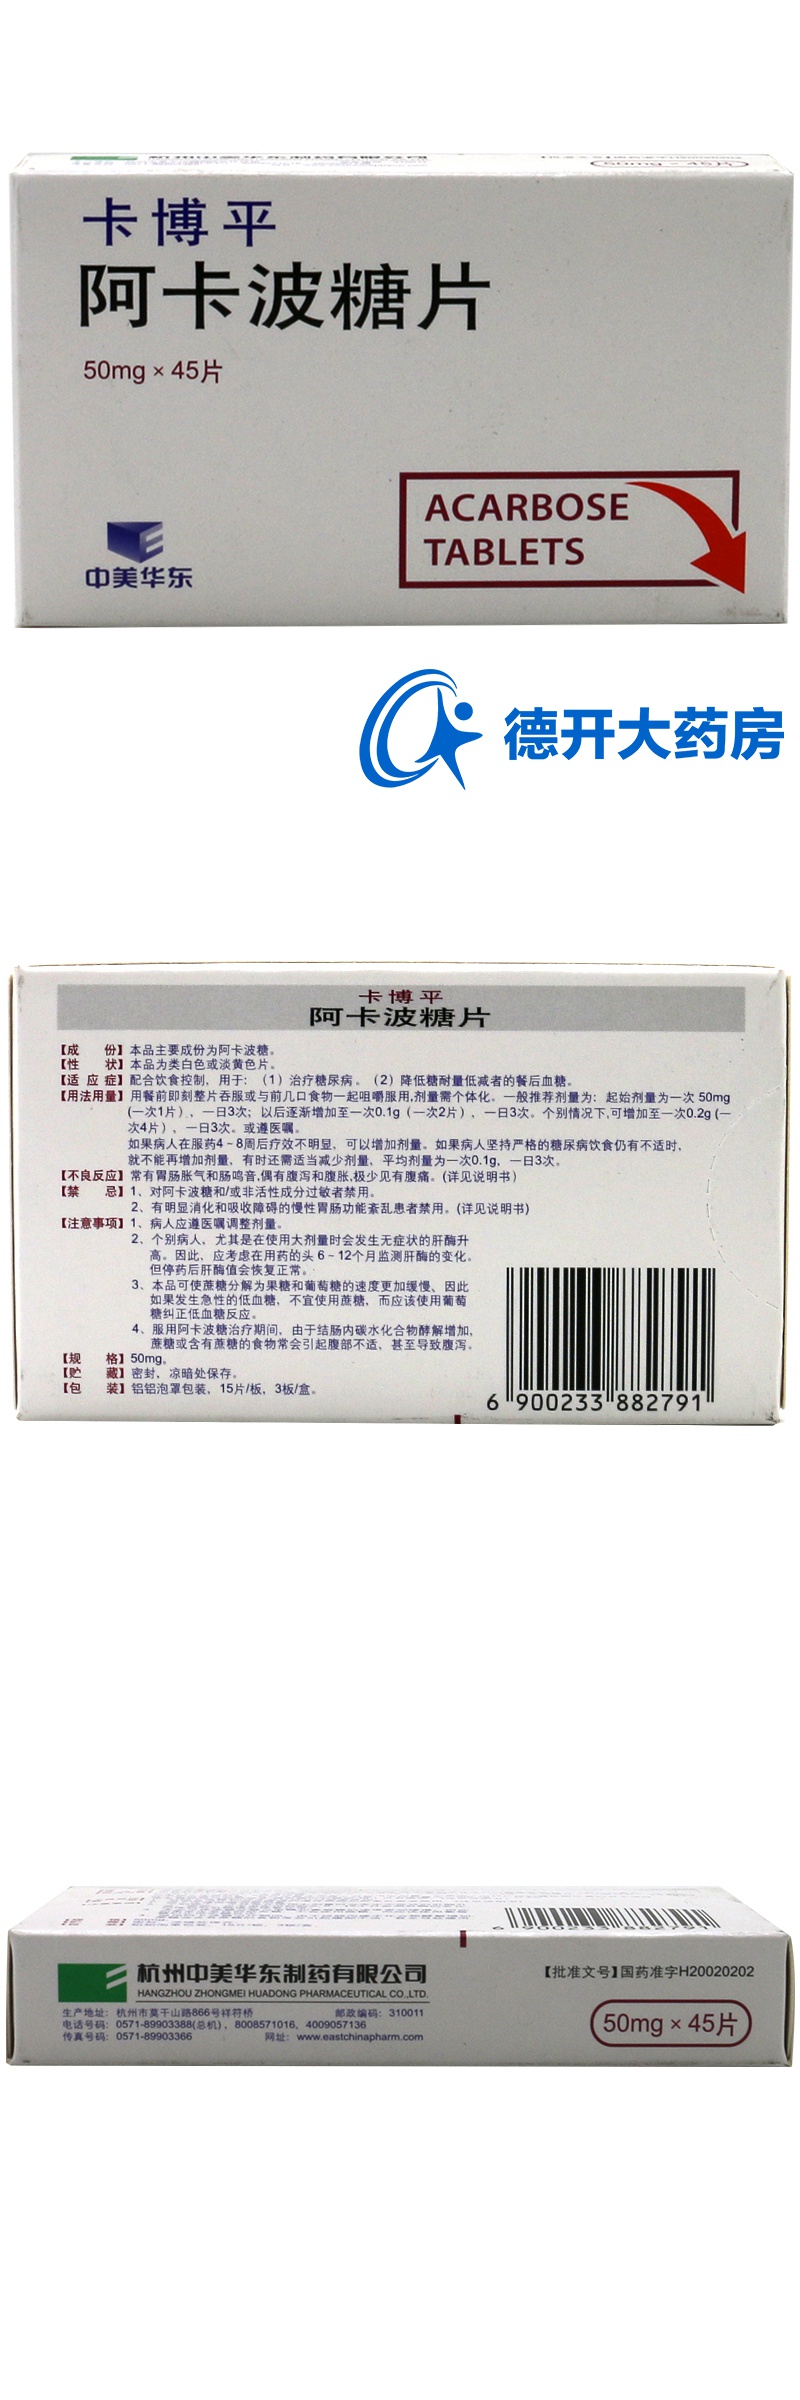 中美华东 卡博平 阿卡波糖片 50mg*45片/盒